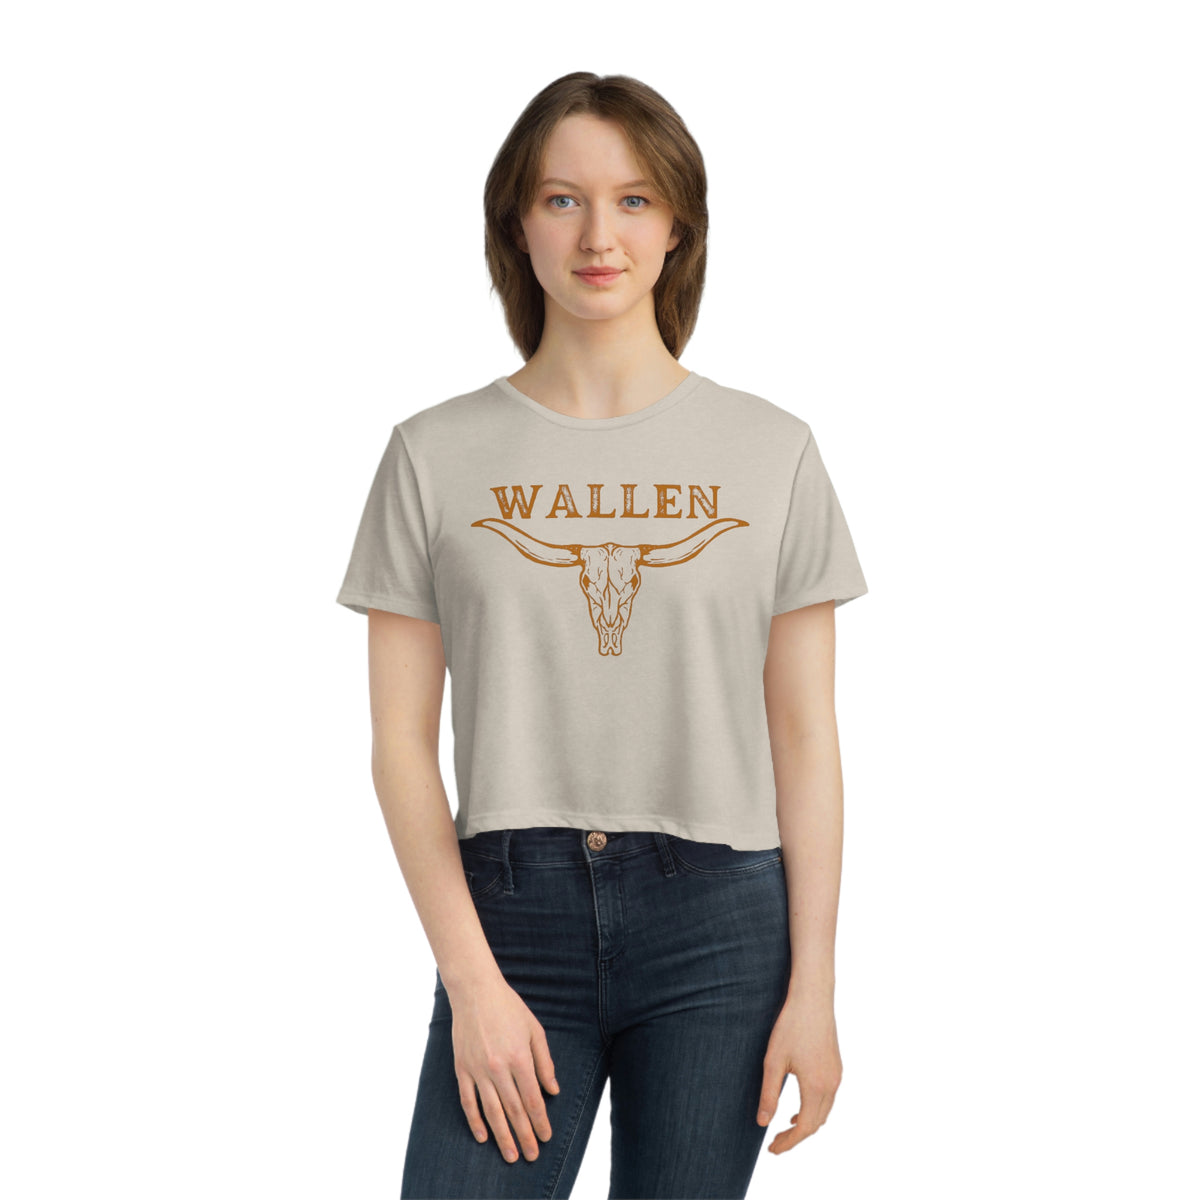 Morgan Wallen shirt, Morgan Wallen tshirt, Wallen crop top